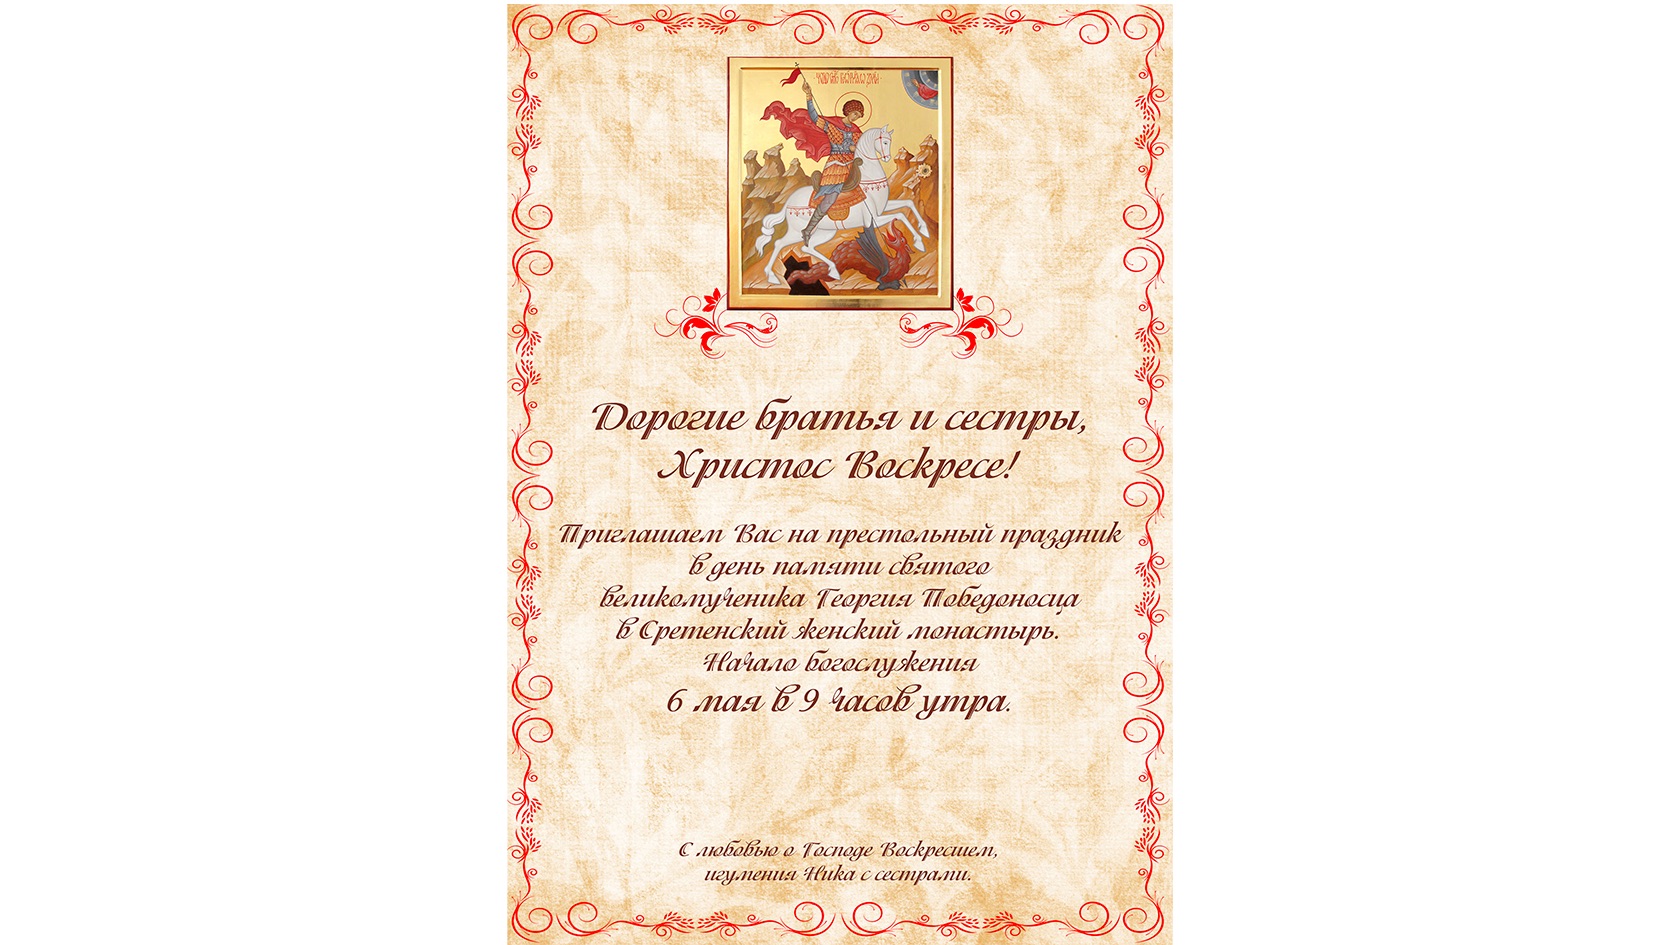 Дорогие братья и сестры,  приглашаем Вас на престольный праздник в день памяти святого  великомученика Георгия Победоносца